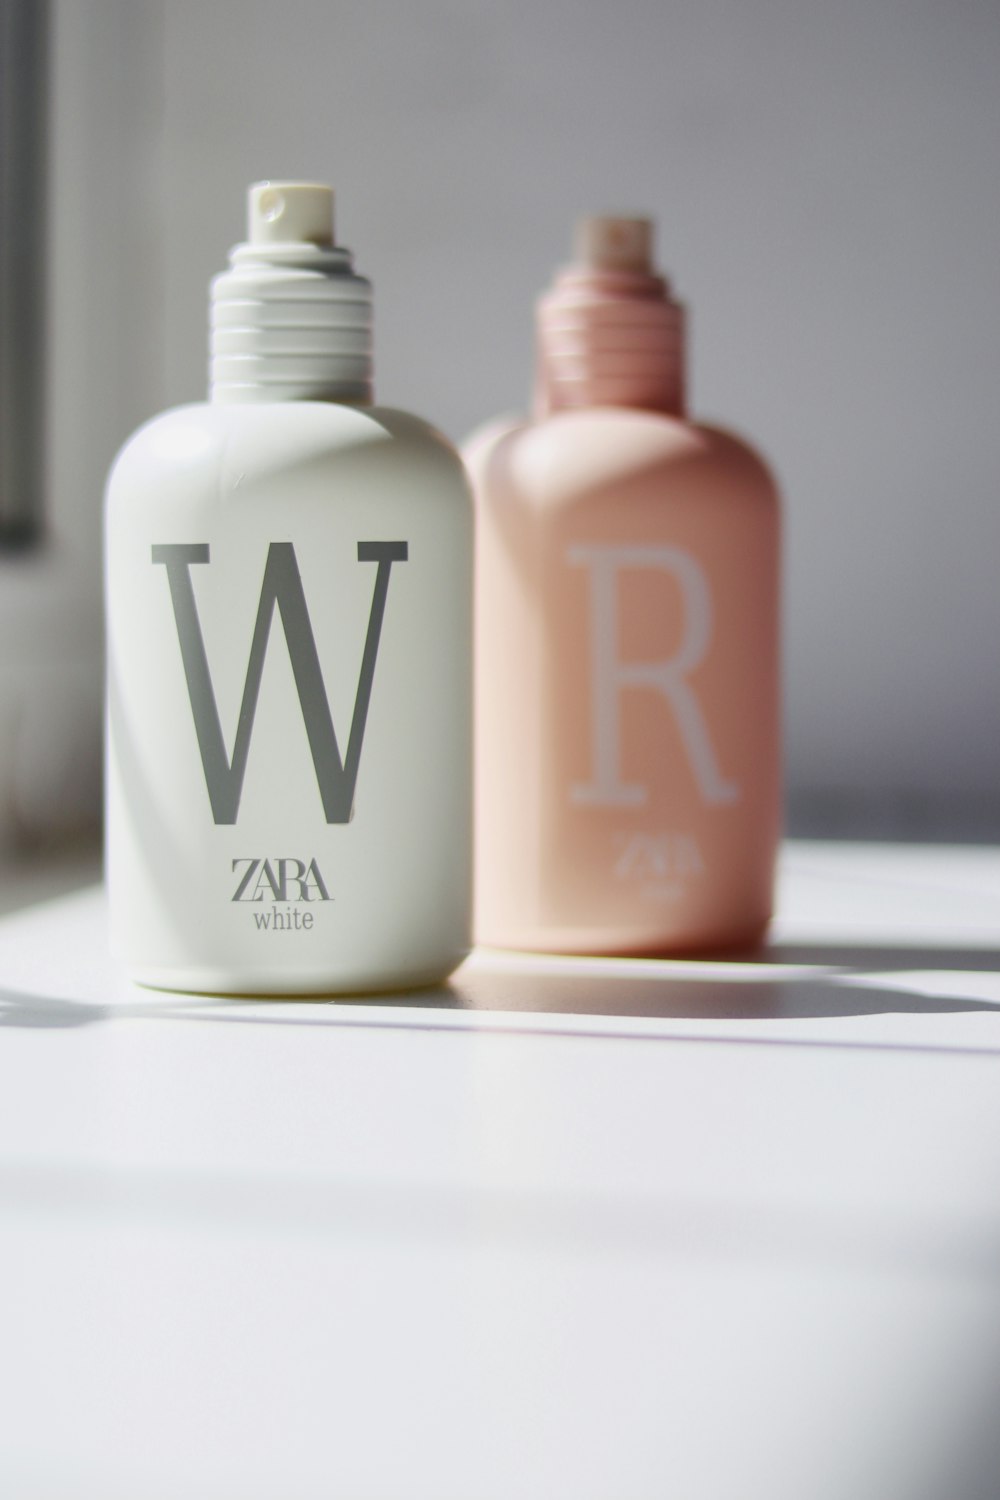 Foto botella de calvin klein blanca y rosa – Imagen ザラ gratis en Unsplash